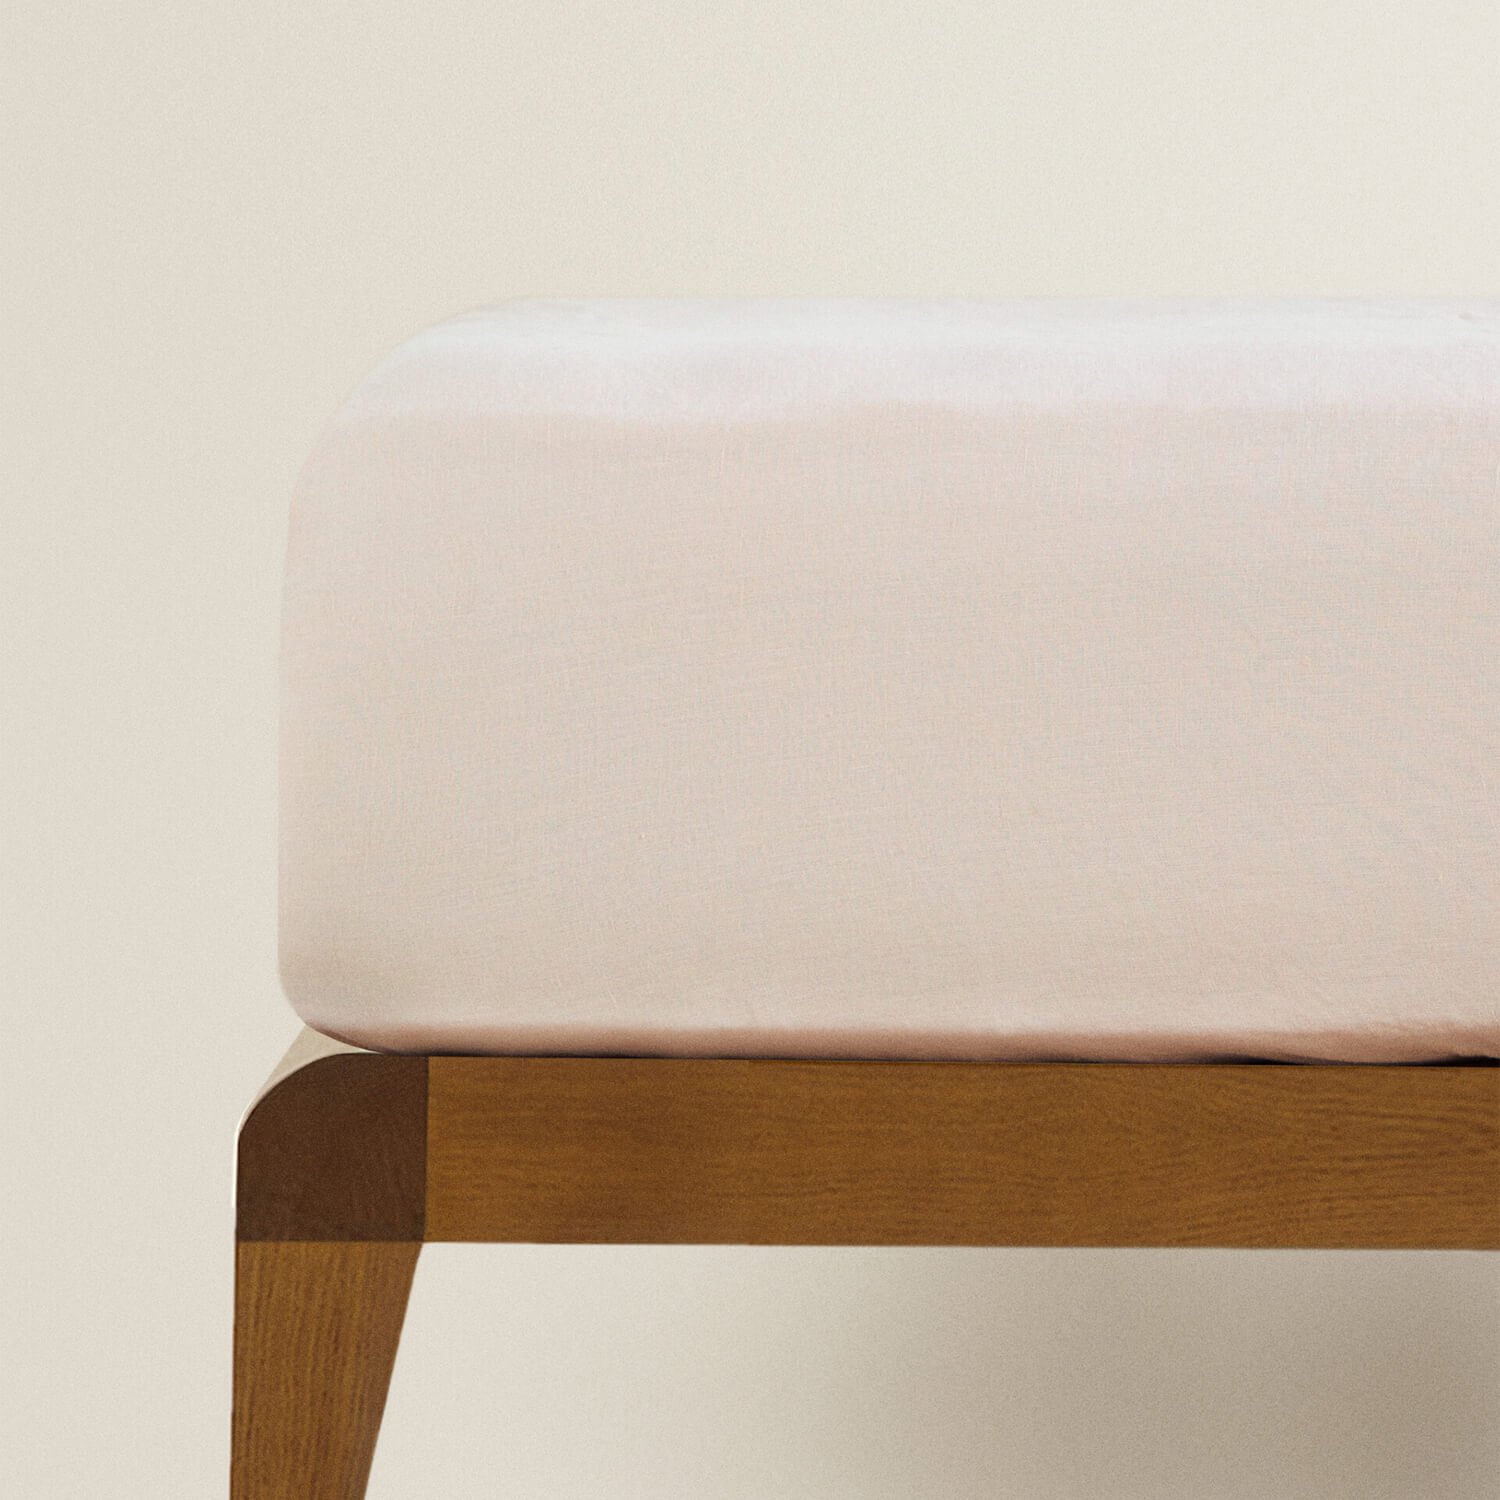 Простыня на резинке Zara Home Children’s Washed Linen, розовый простыня натяжная из стираного льна elina 160 x 200 см серый